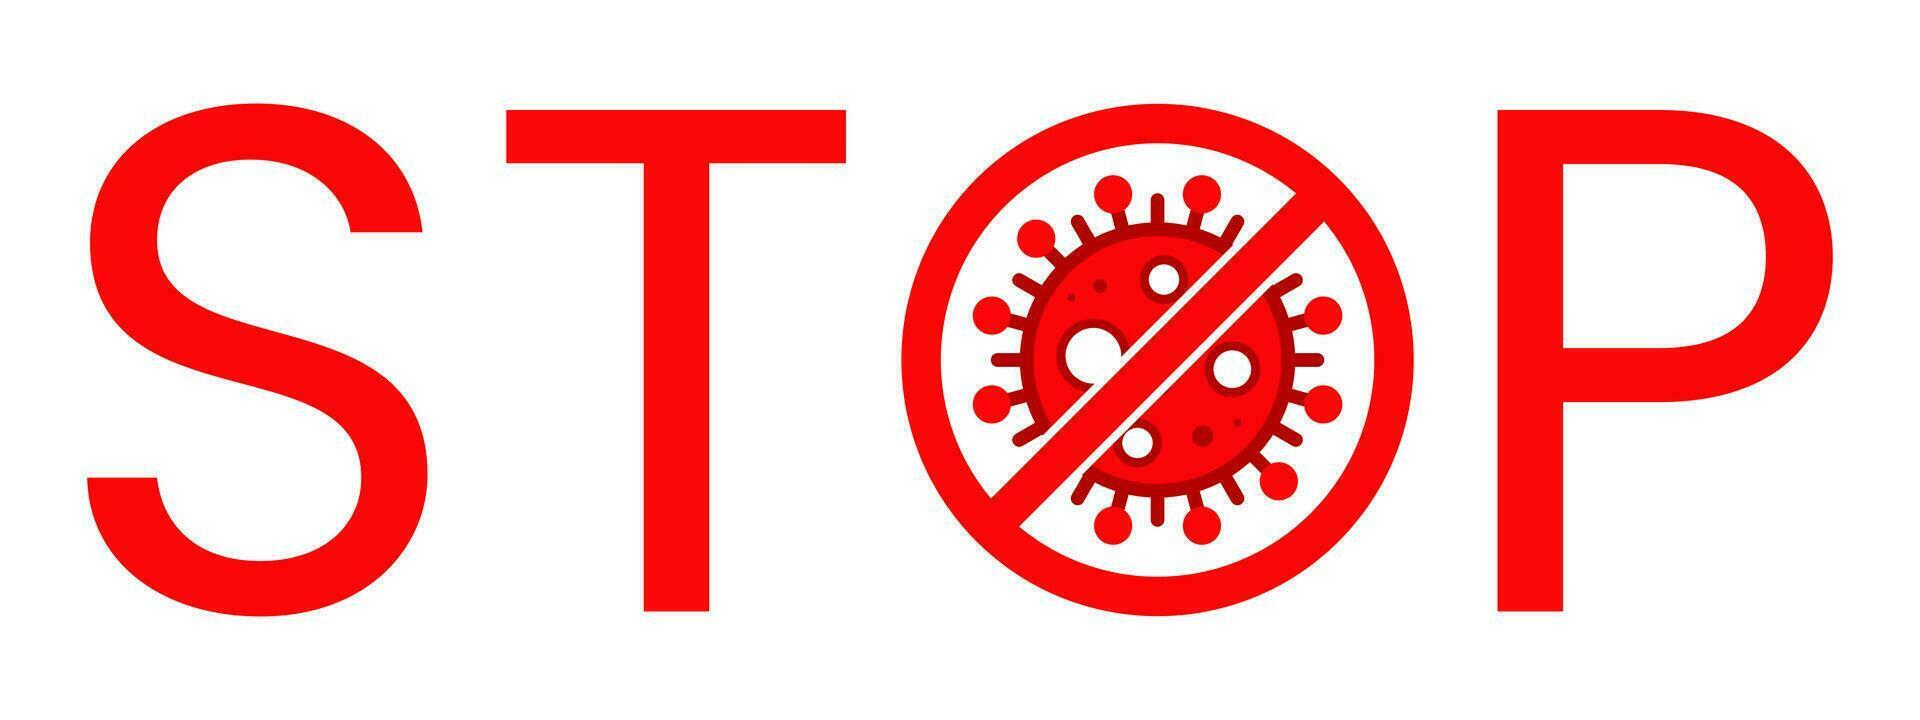 Arrêtez texte avertissement signe avec virus cellule à l'intérieur. bloquer timbre. rouge vecteur. protection symbole, risque zone pour maladie ou pandémie. vecteur